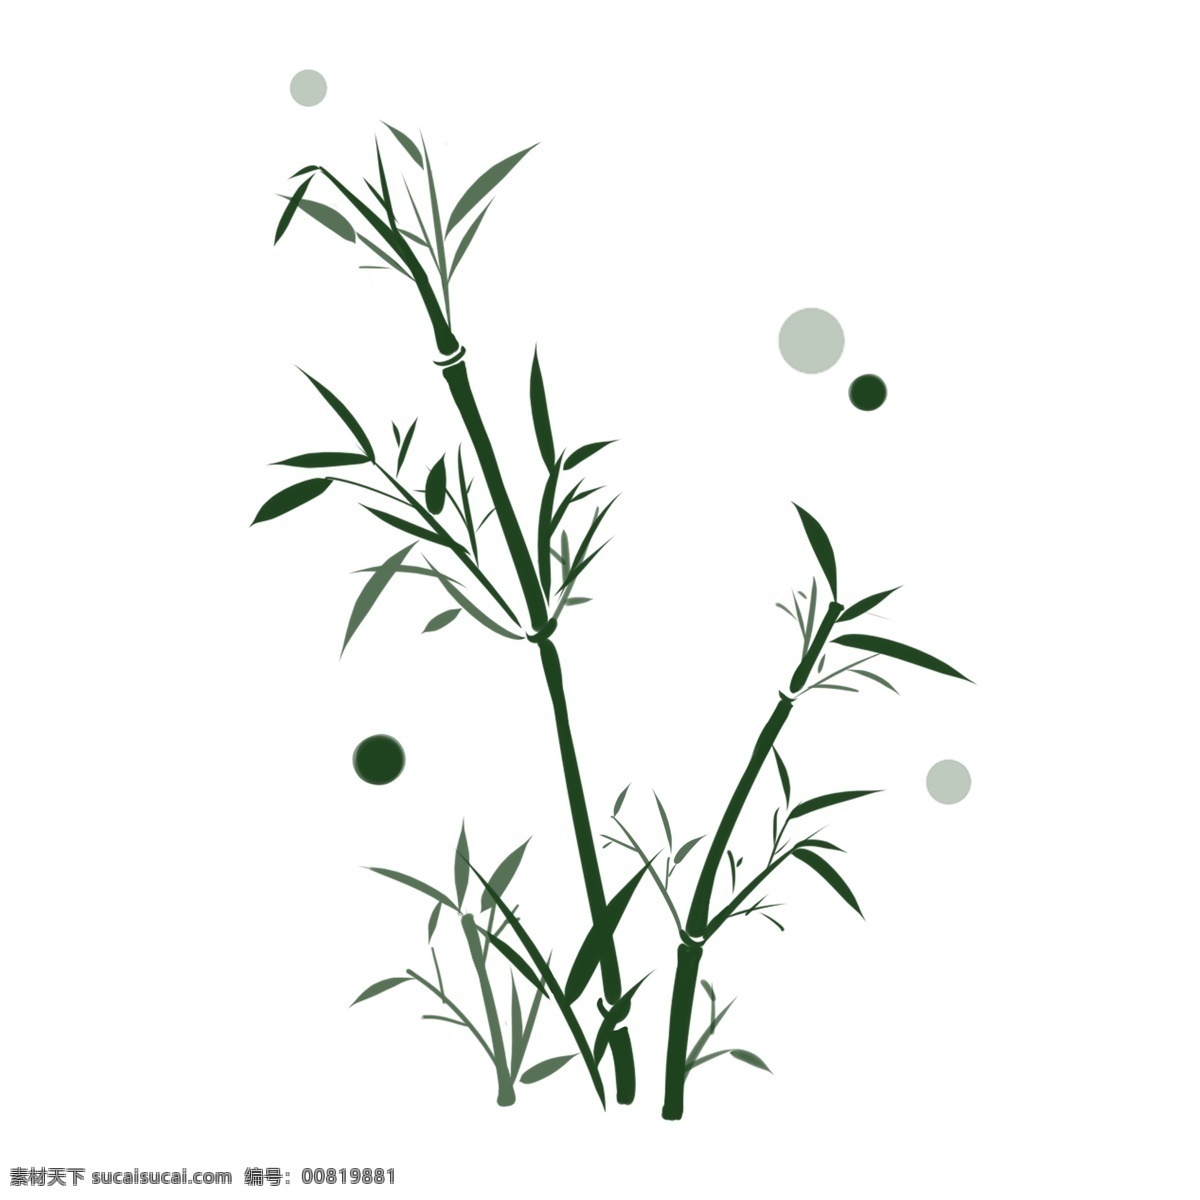 墨绿色 竹子 竹叶 装饰 图案